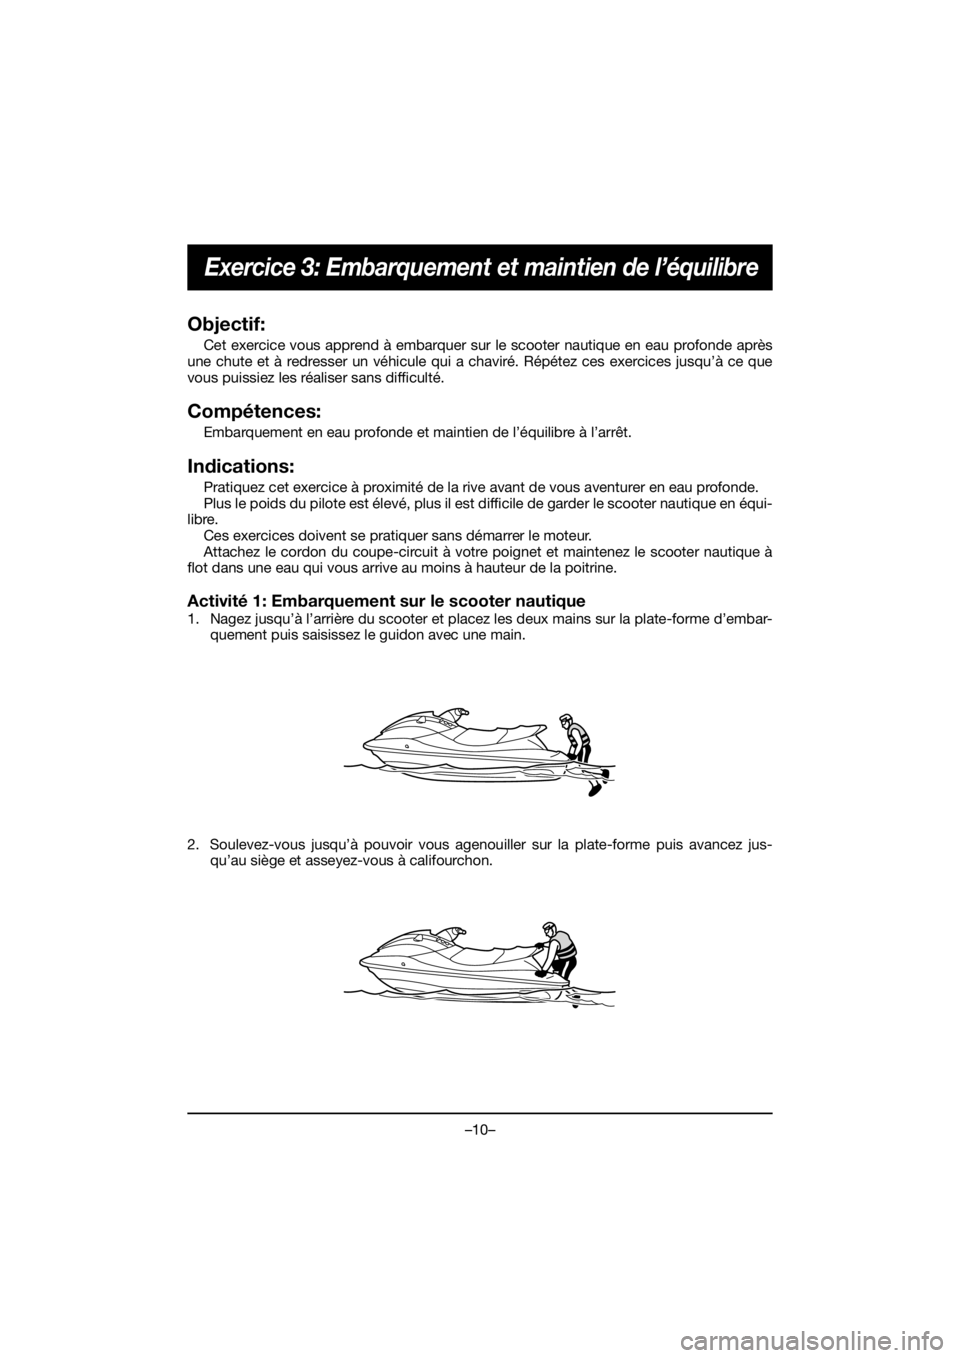 YAMAHA EX 2020  Manual de utilização (in Portuguese) –10–
Exercice 3: Embarquement et maintien de l’équilibre
Objectif:
Cet exercice vous apprend à embarquer sur le scooter nautique en eau profonde après
une chute et à redresser un véhicule q